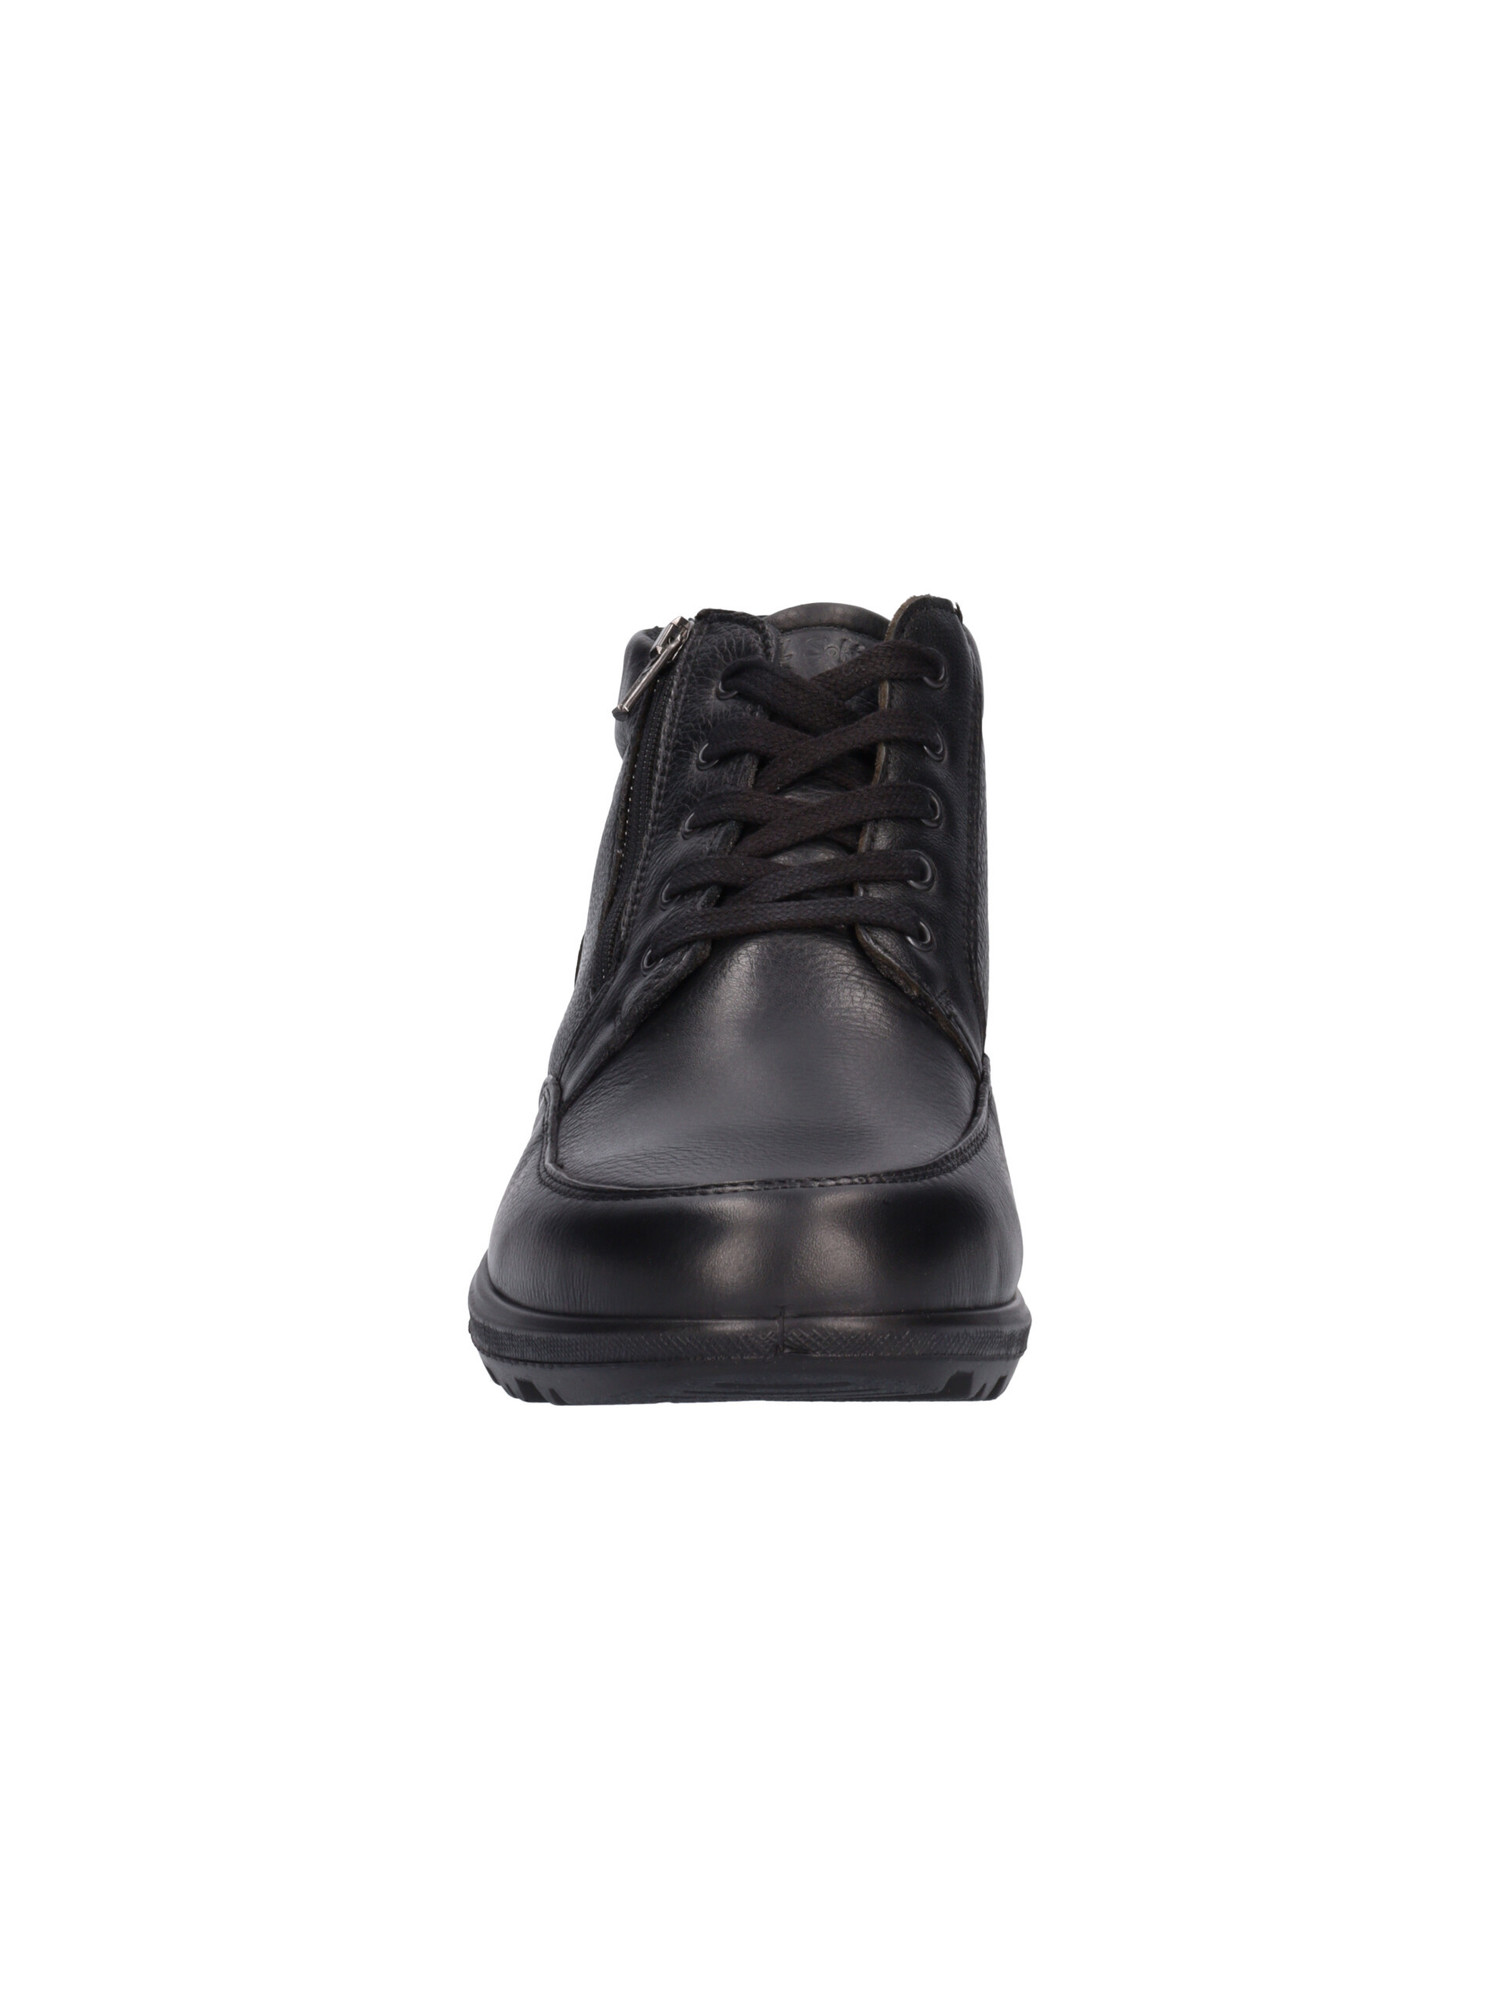 scarpa-casual-enval-soft-da-uomo-nera-1e5c2b